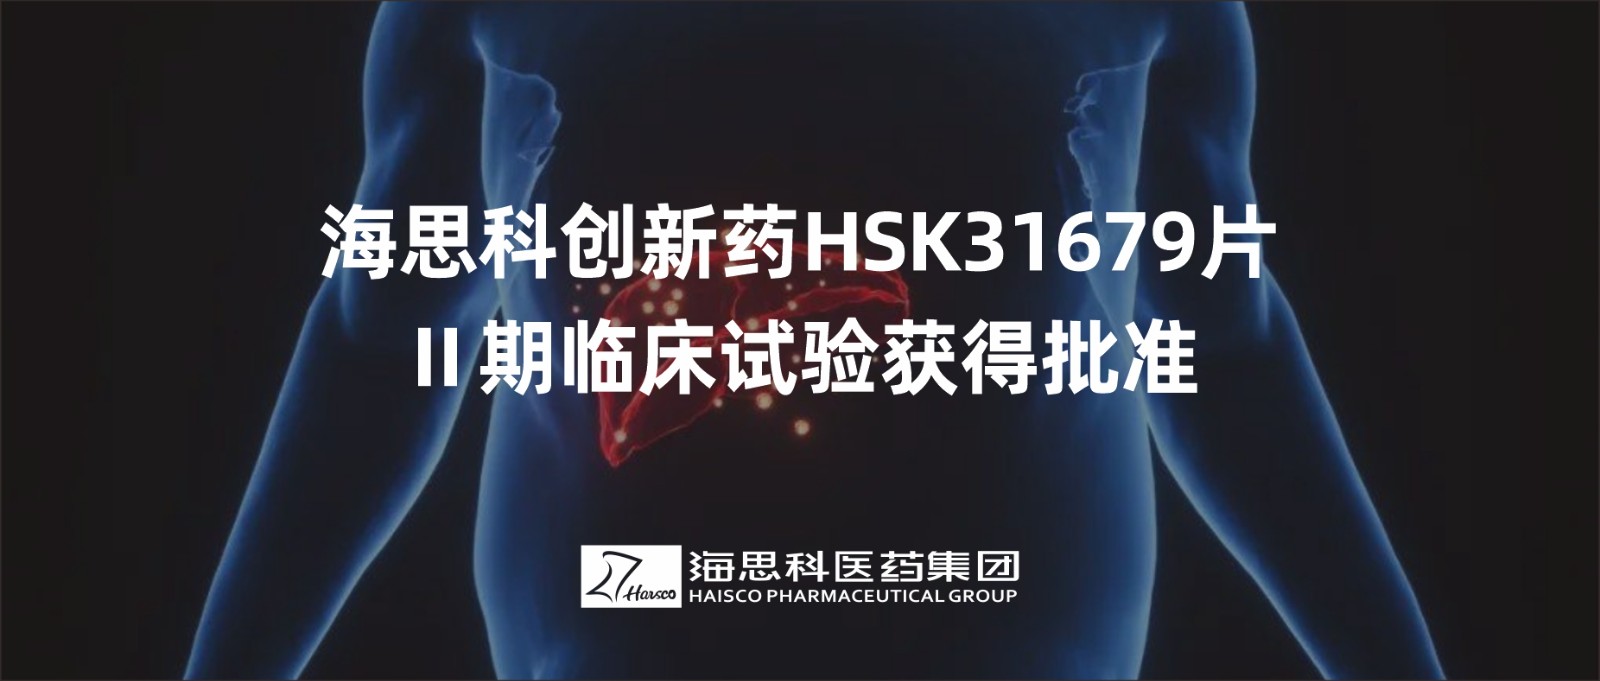 新葡的京集团8814创新药HSK31679片Ⅱ期临床试验获得批准